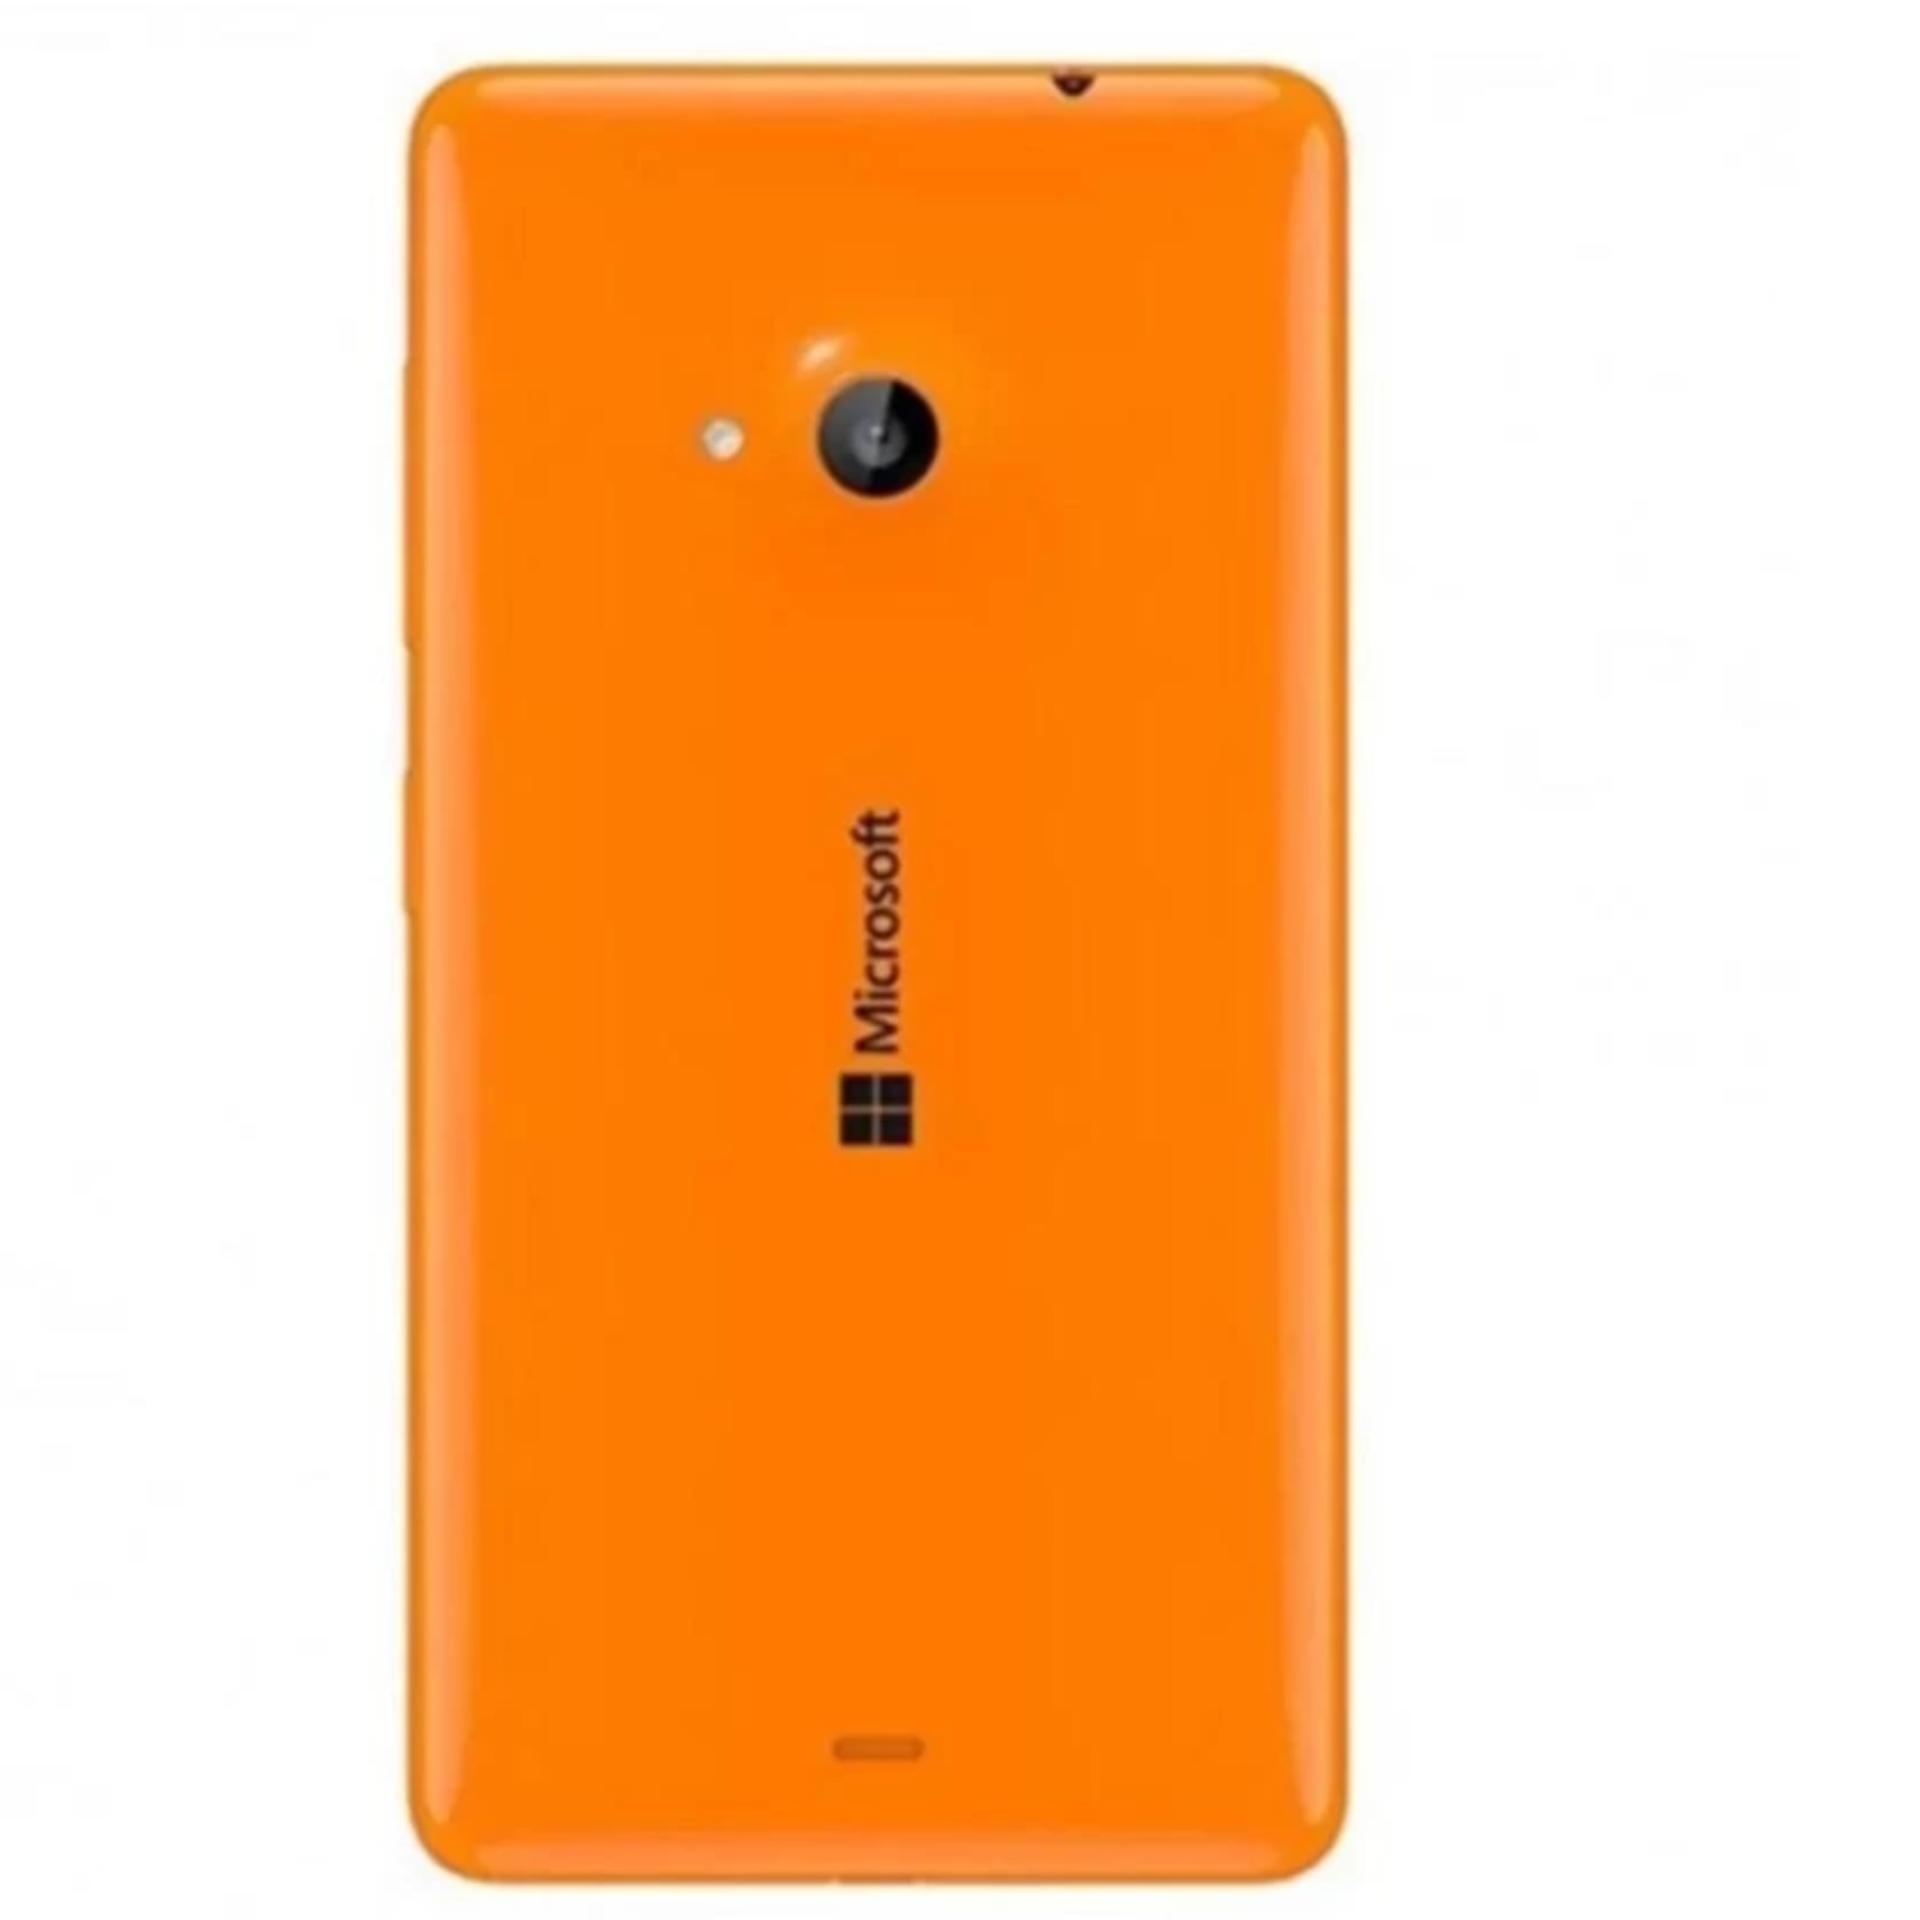 Vỏ nắp lưng Microsoft Lumia 535